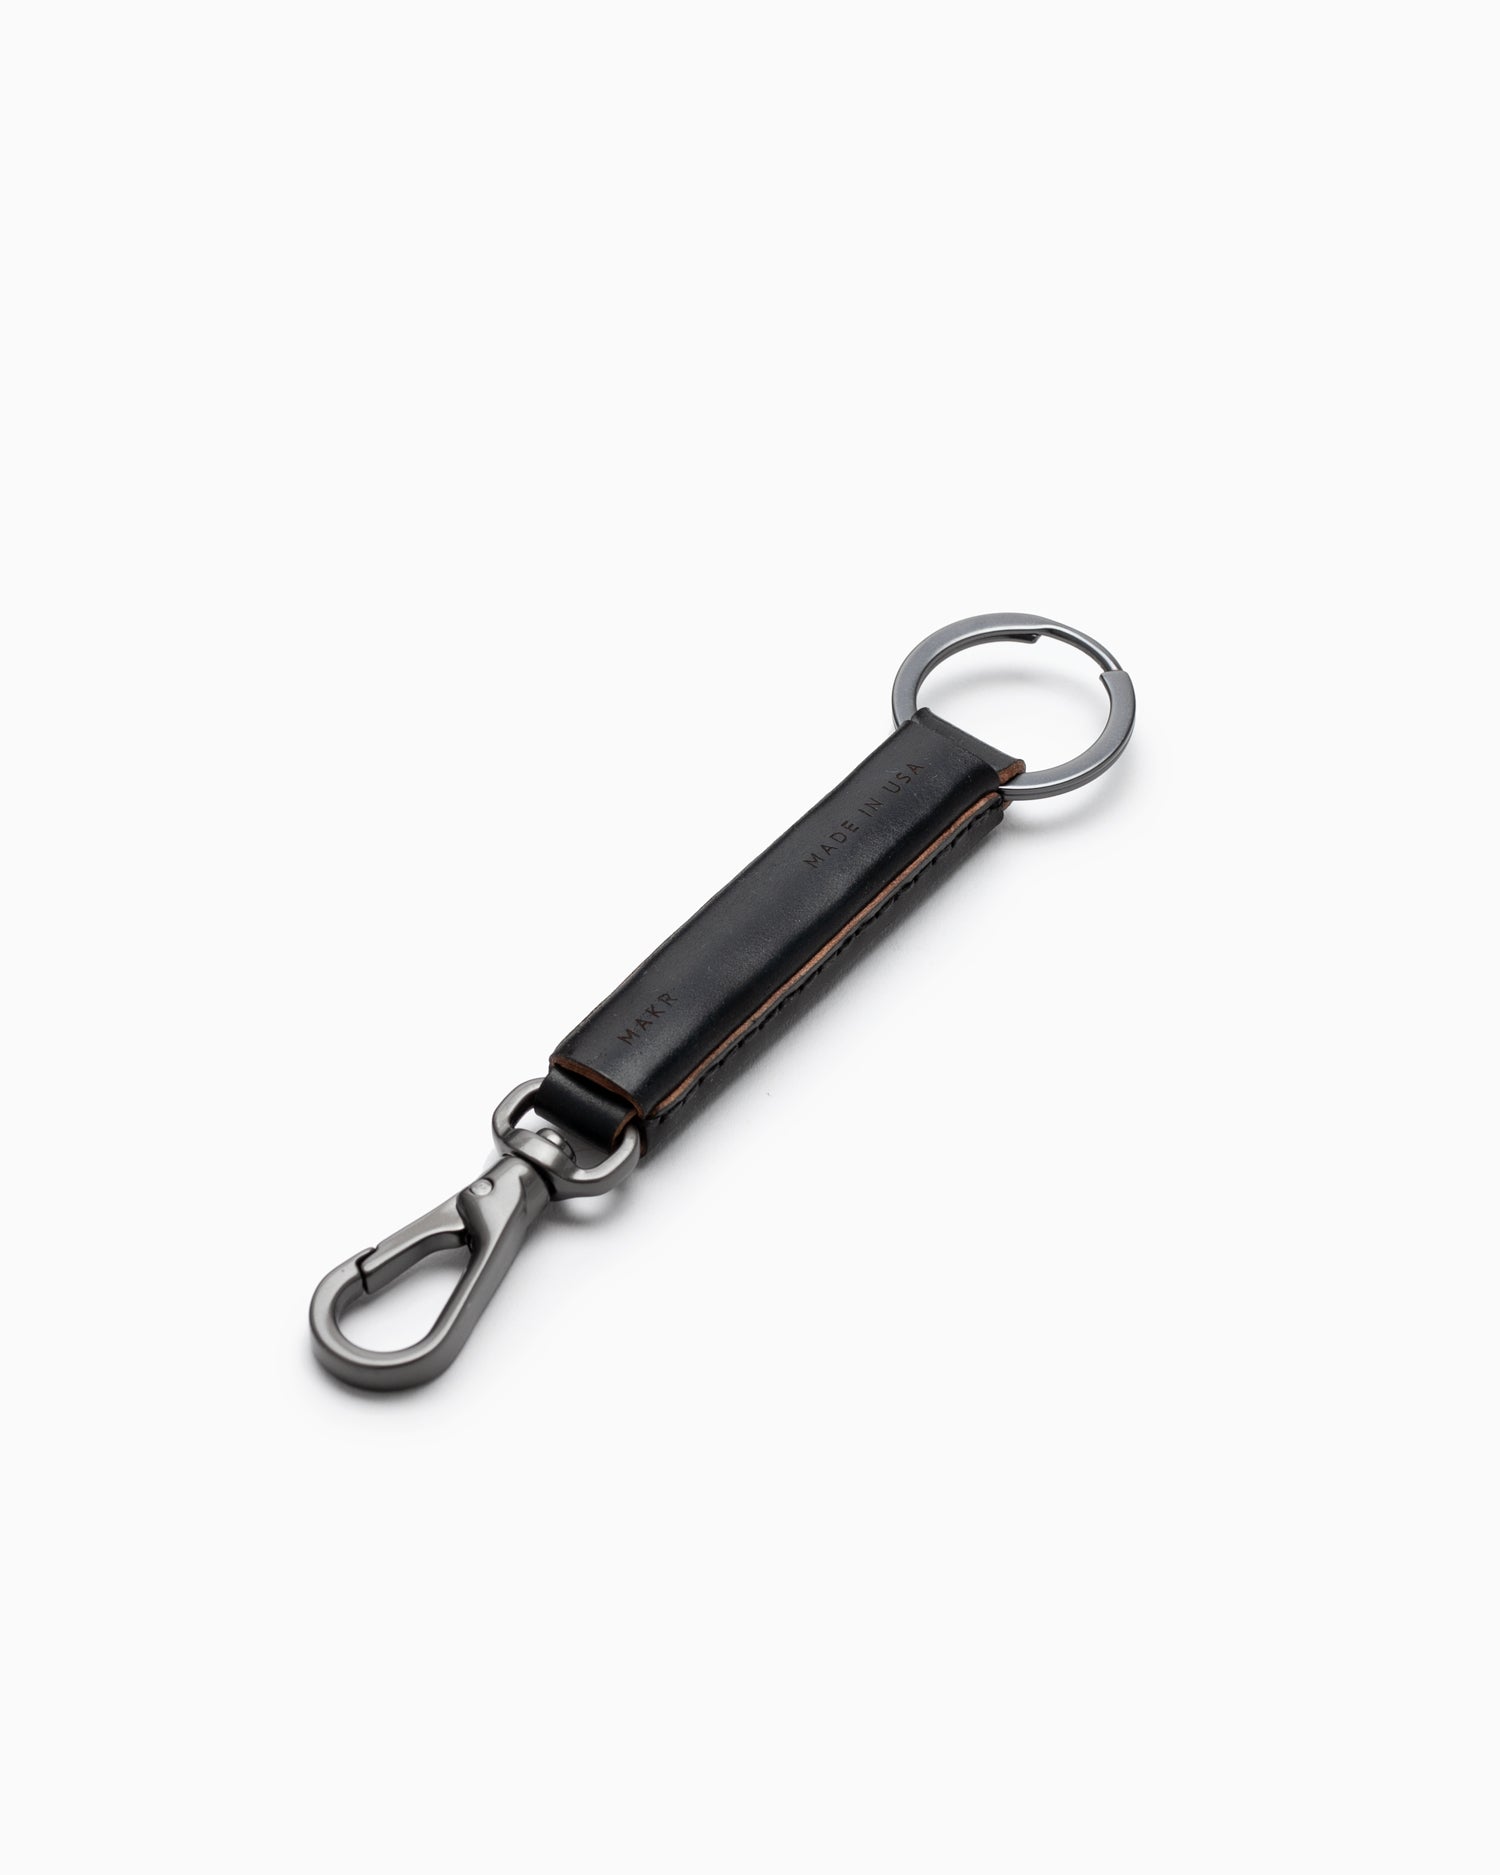 Loop Keychain with Snap Hook - Black